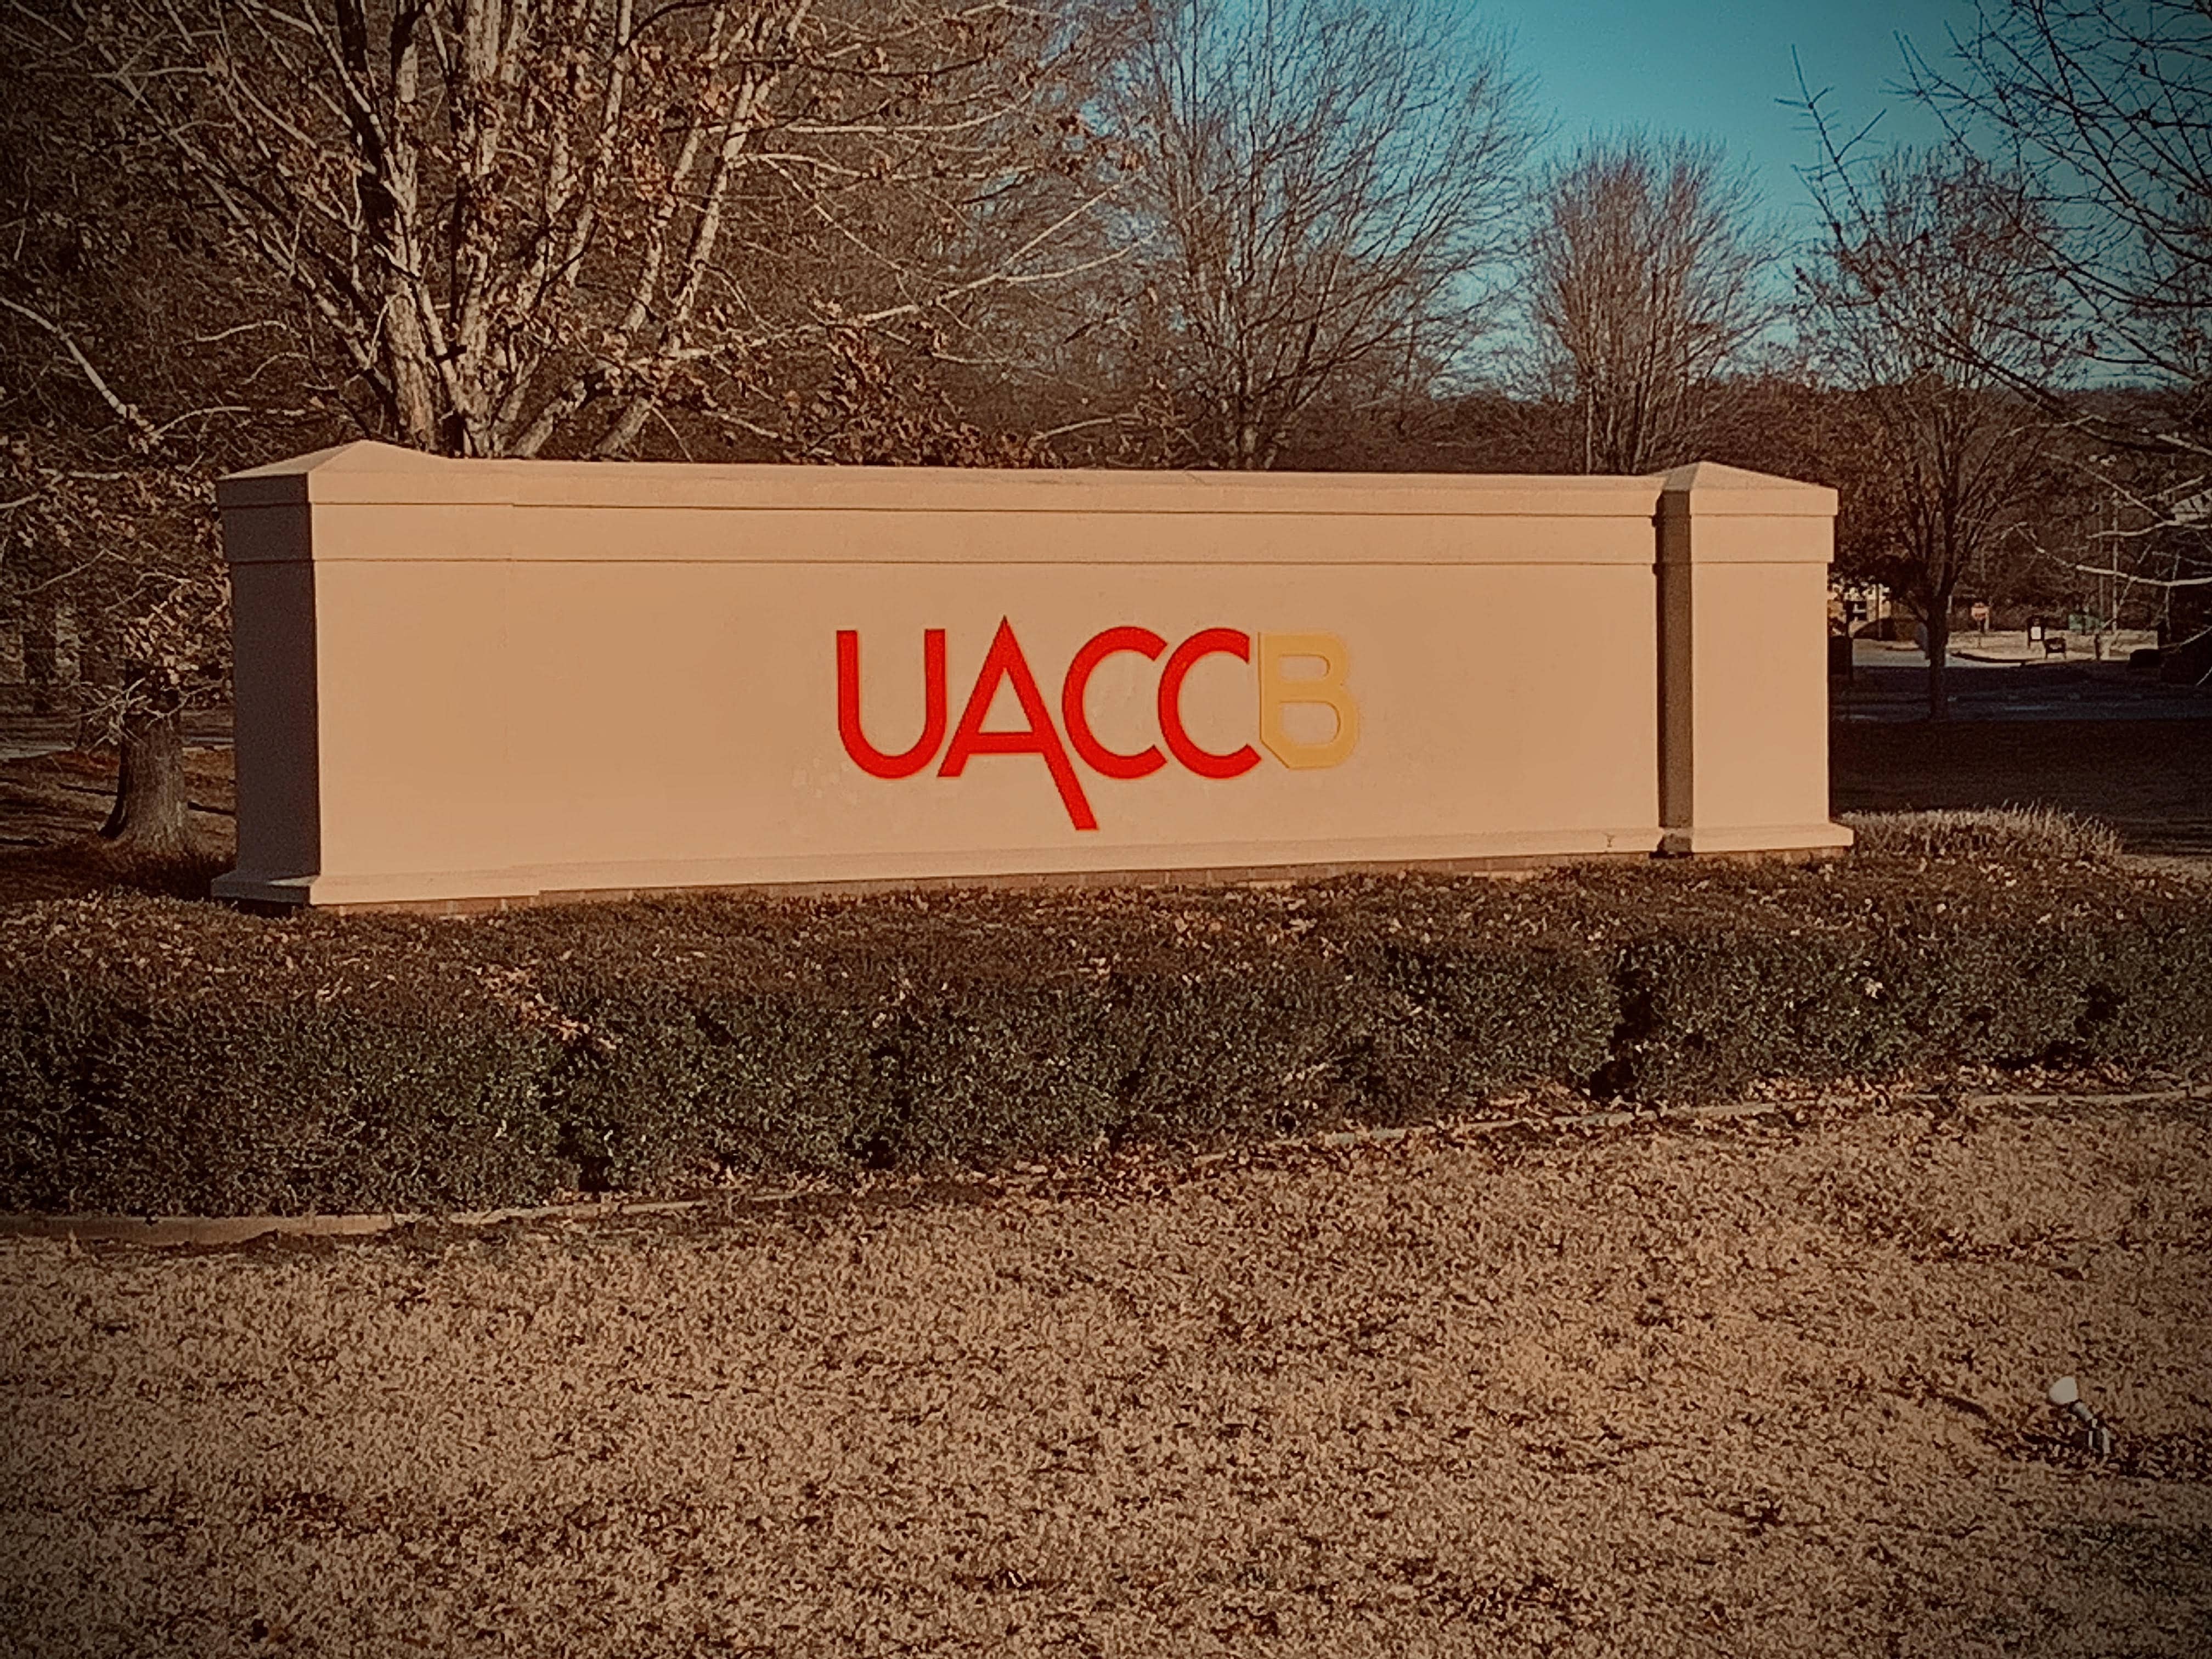 uaccb-10